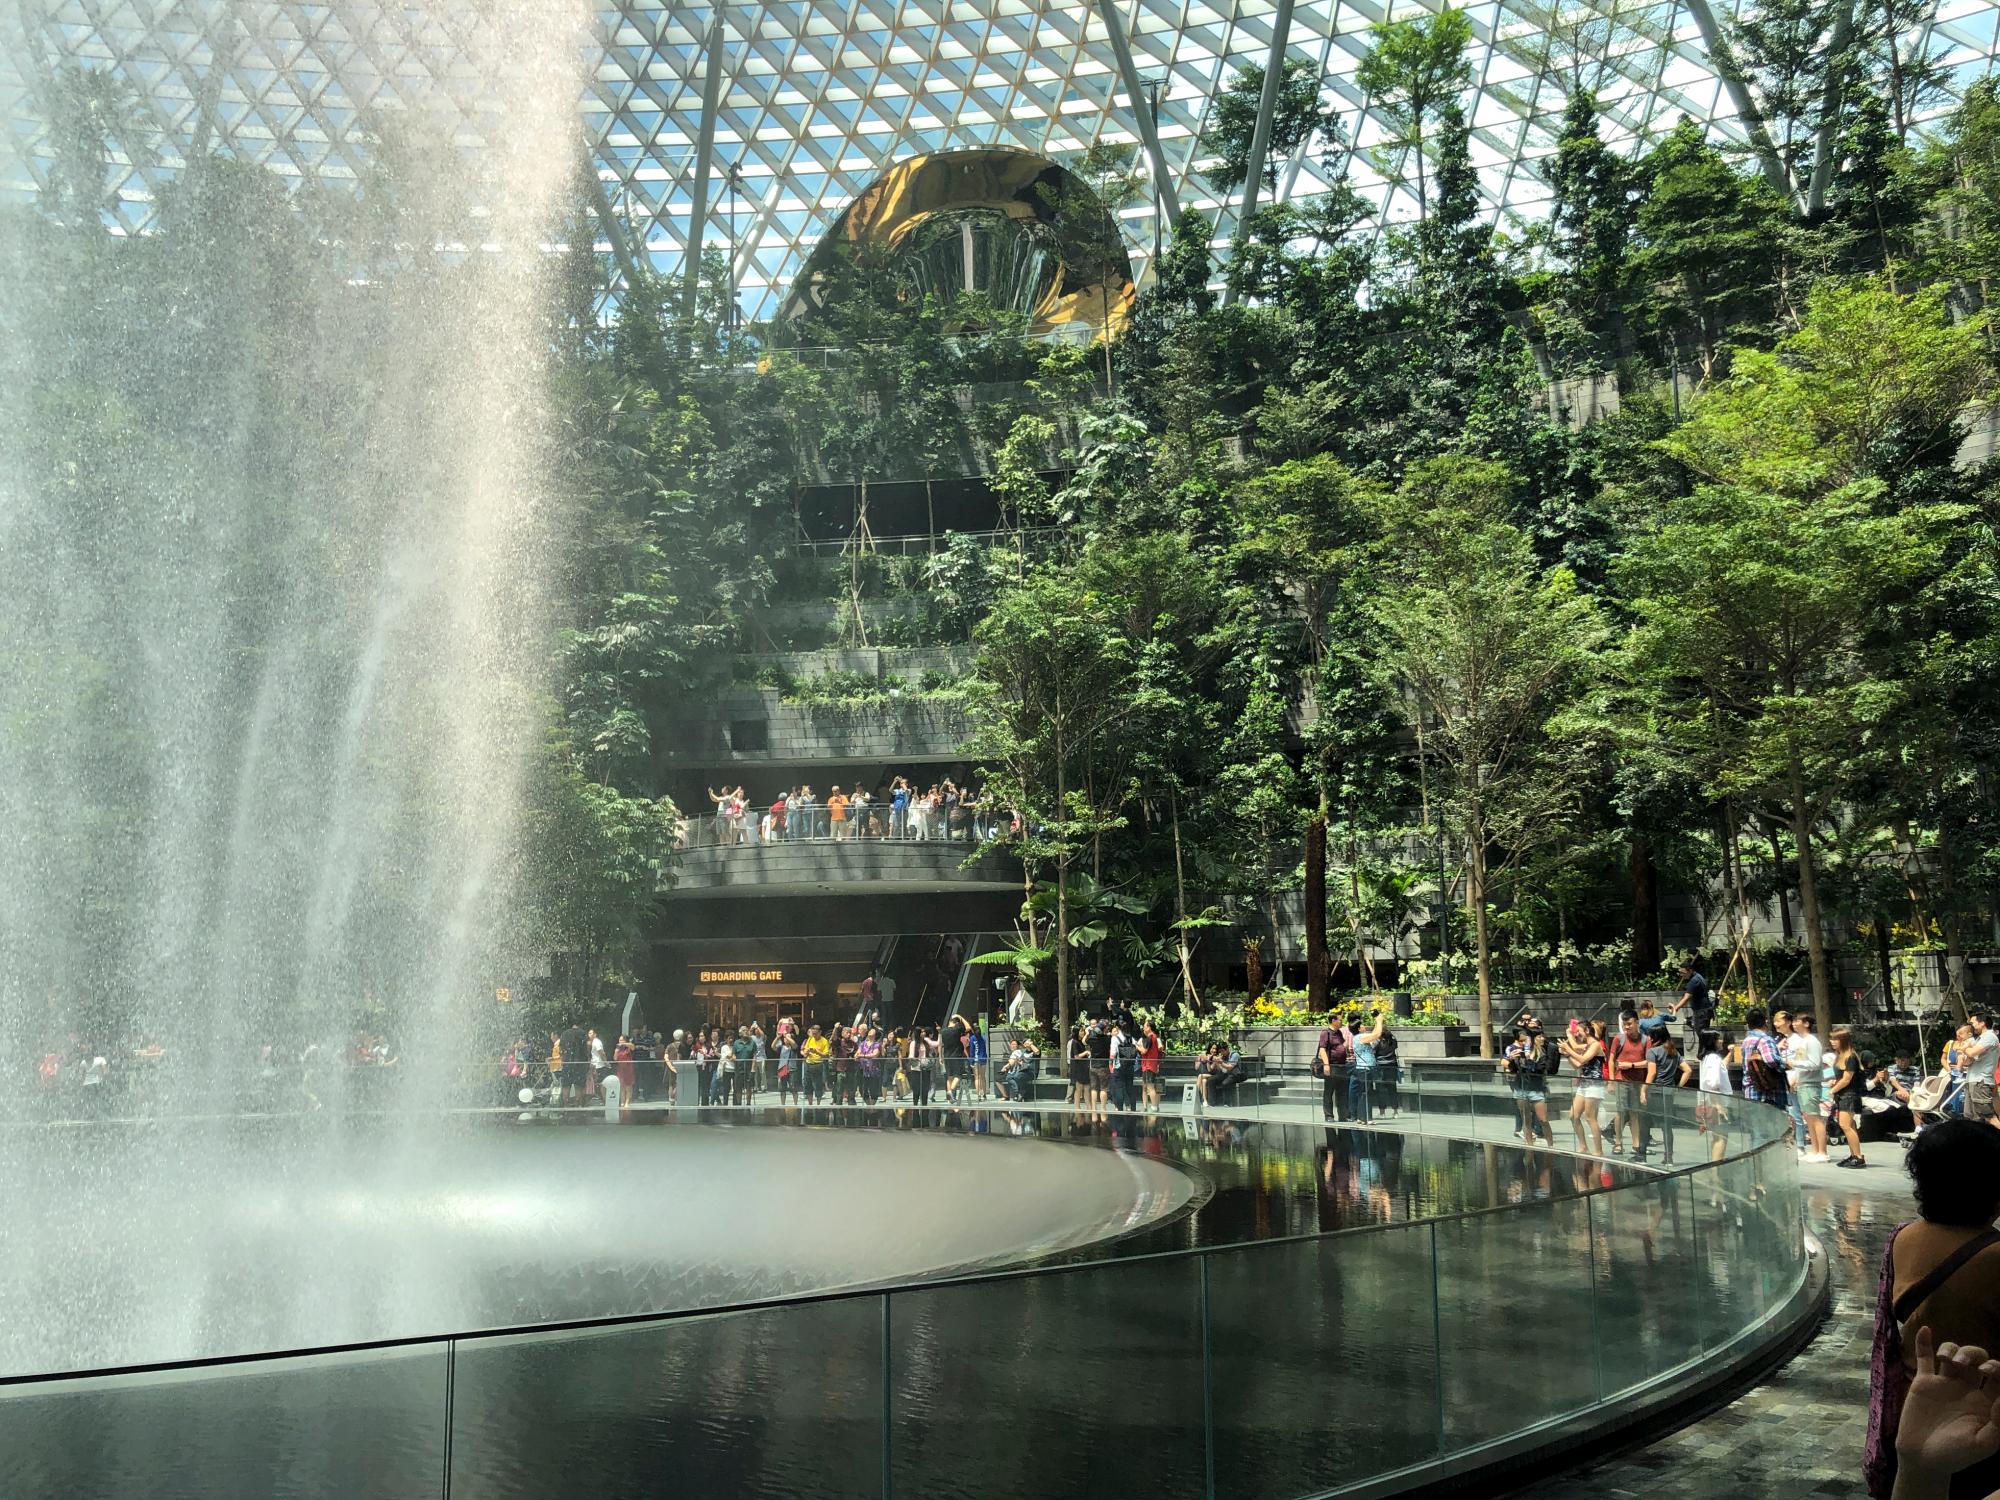 La cascada de 40 metros refresca el aire e impresiona a los visitantes durante el día.